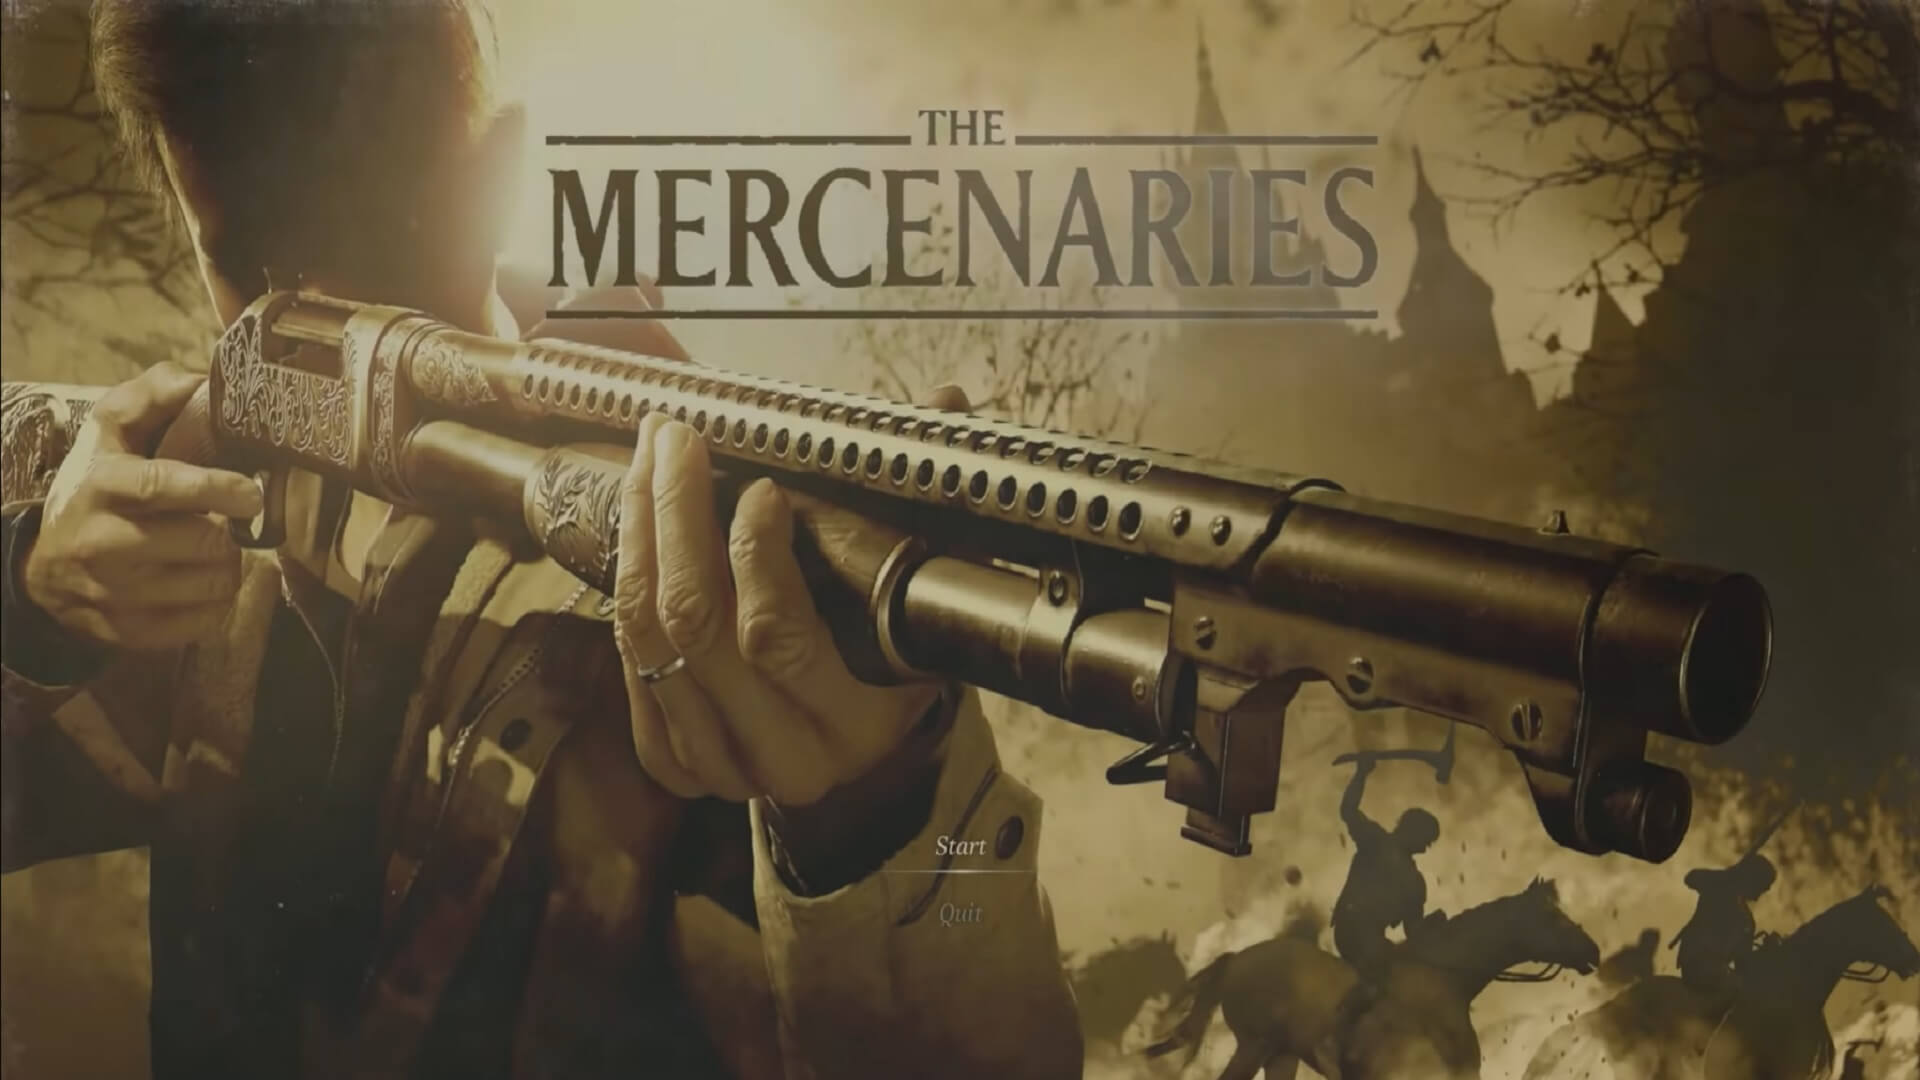 Mercenaries mode in Resident Evil Village